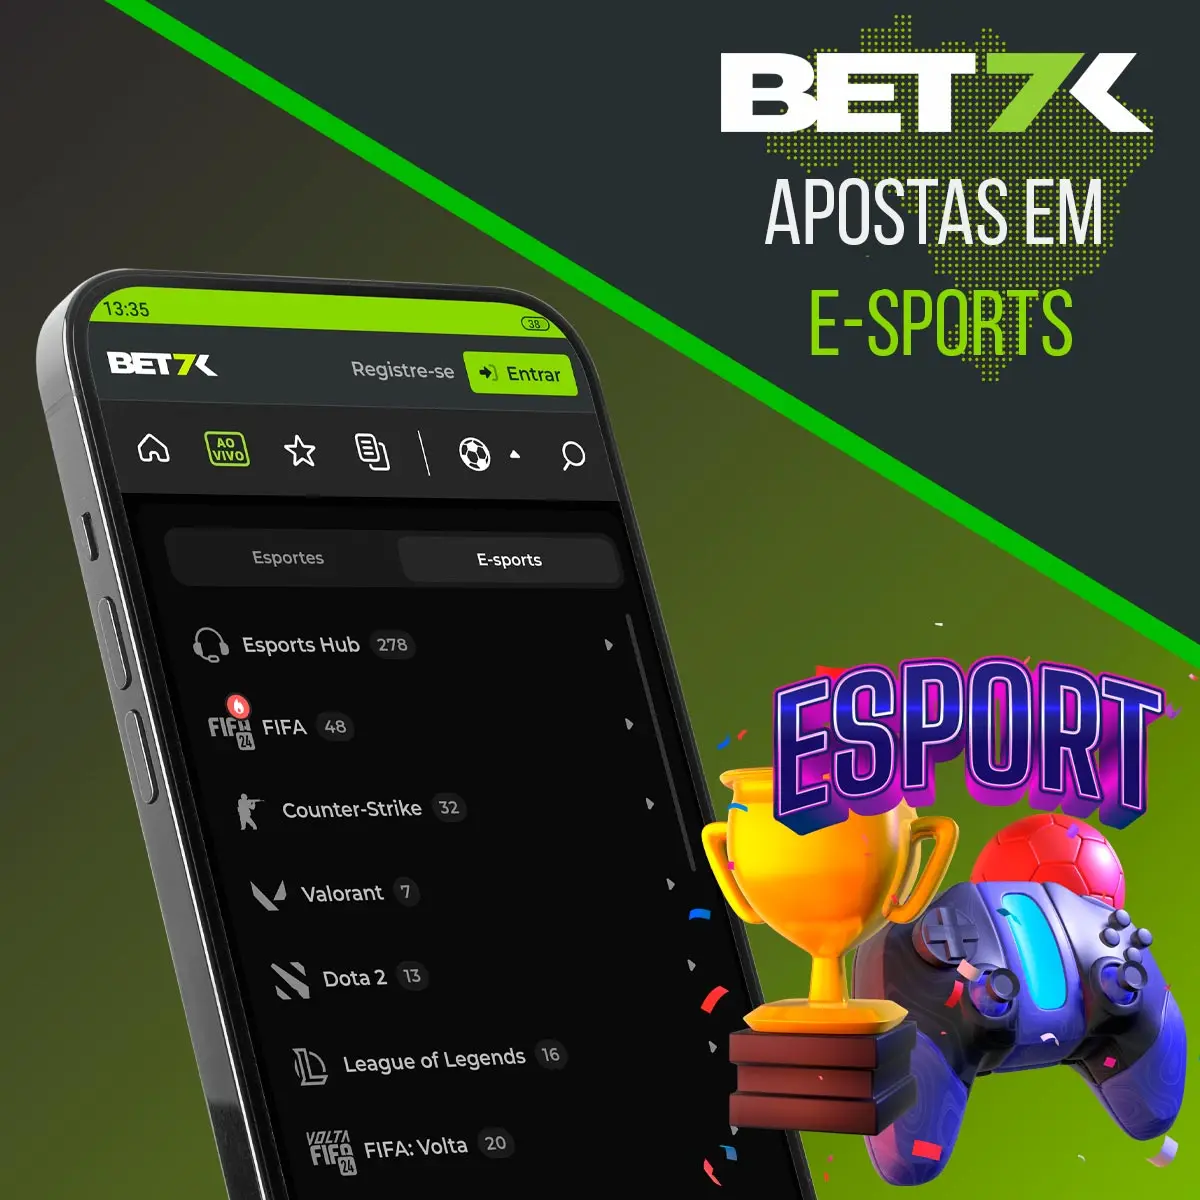 Apostas em eSports na casa de apostas Bet7k no Brasil